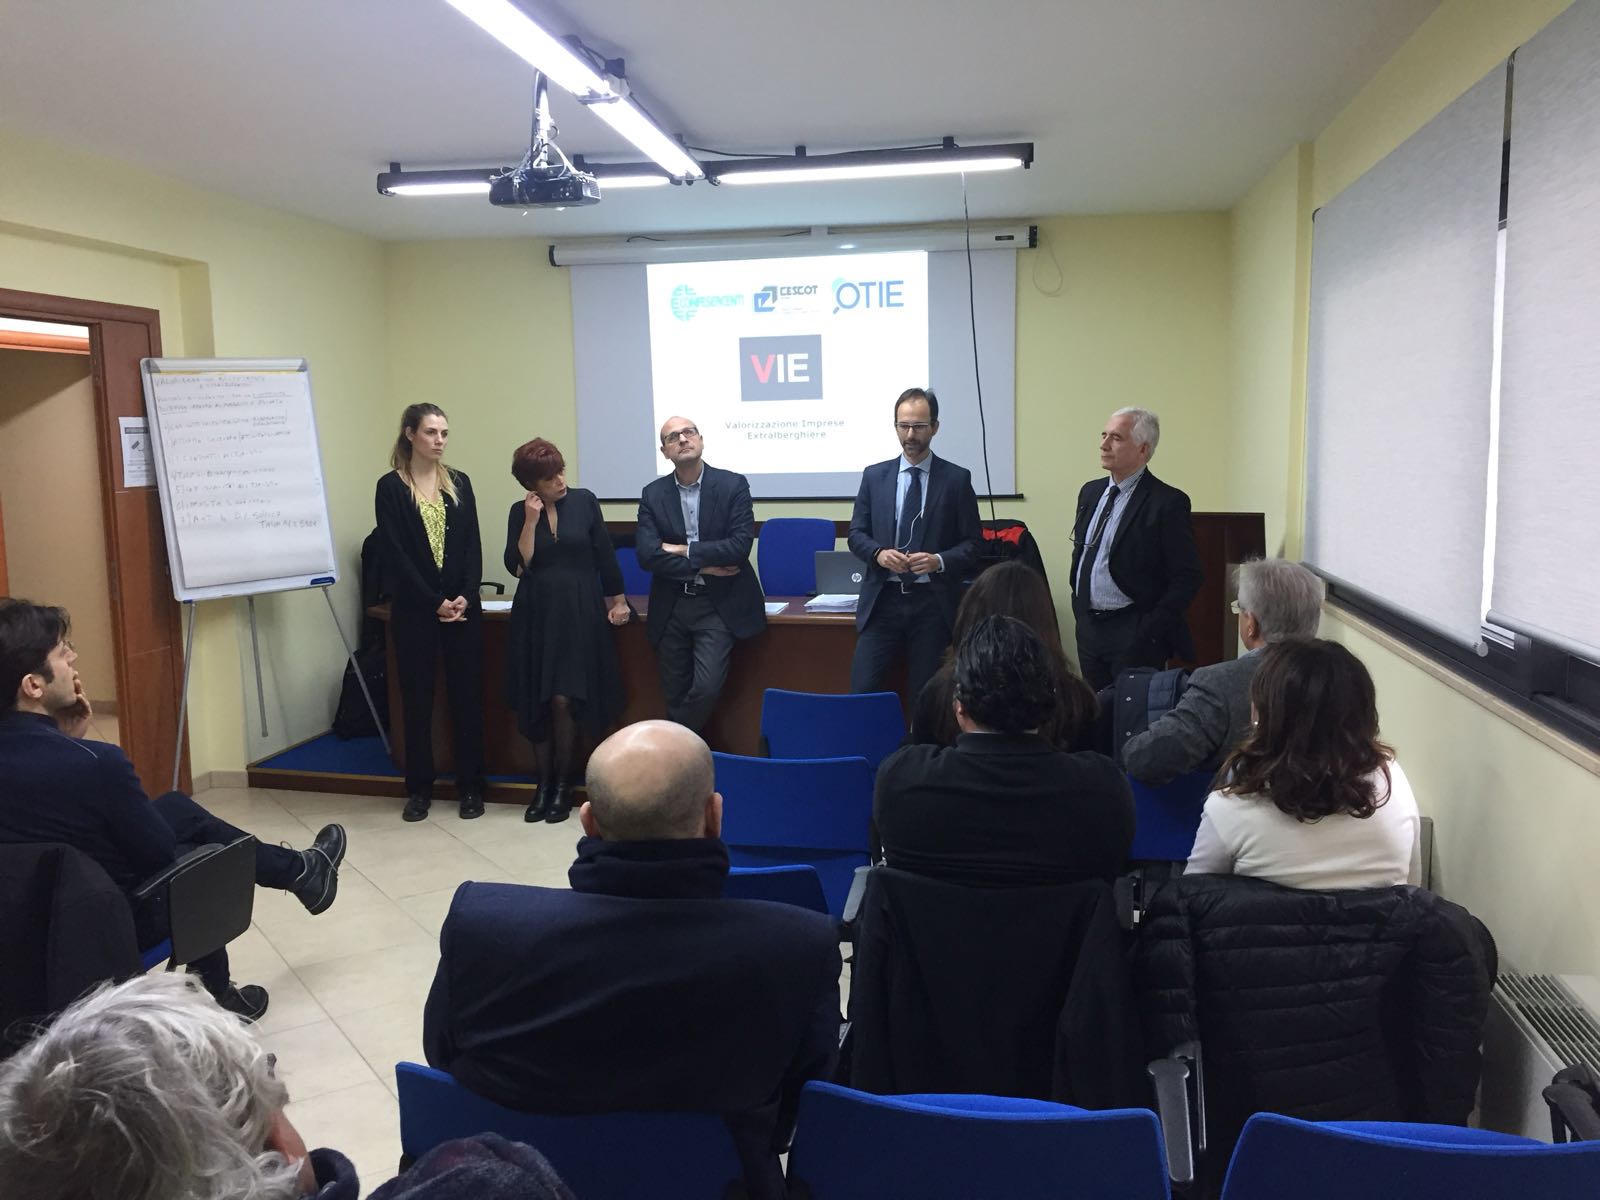 Cescot Messina, Confesercenti Sicilia e Otie: prende il via il progetto VIE